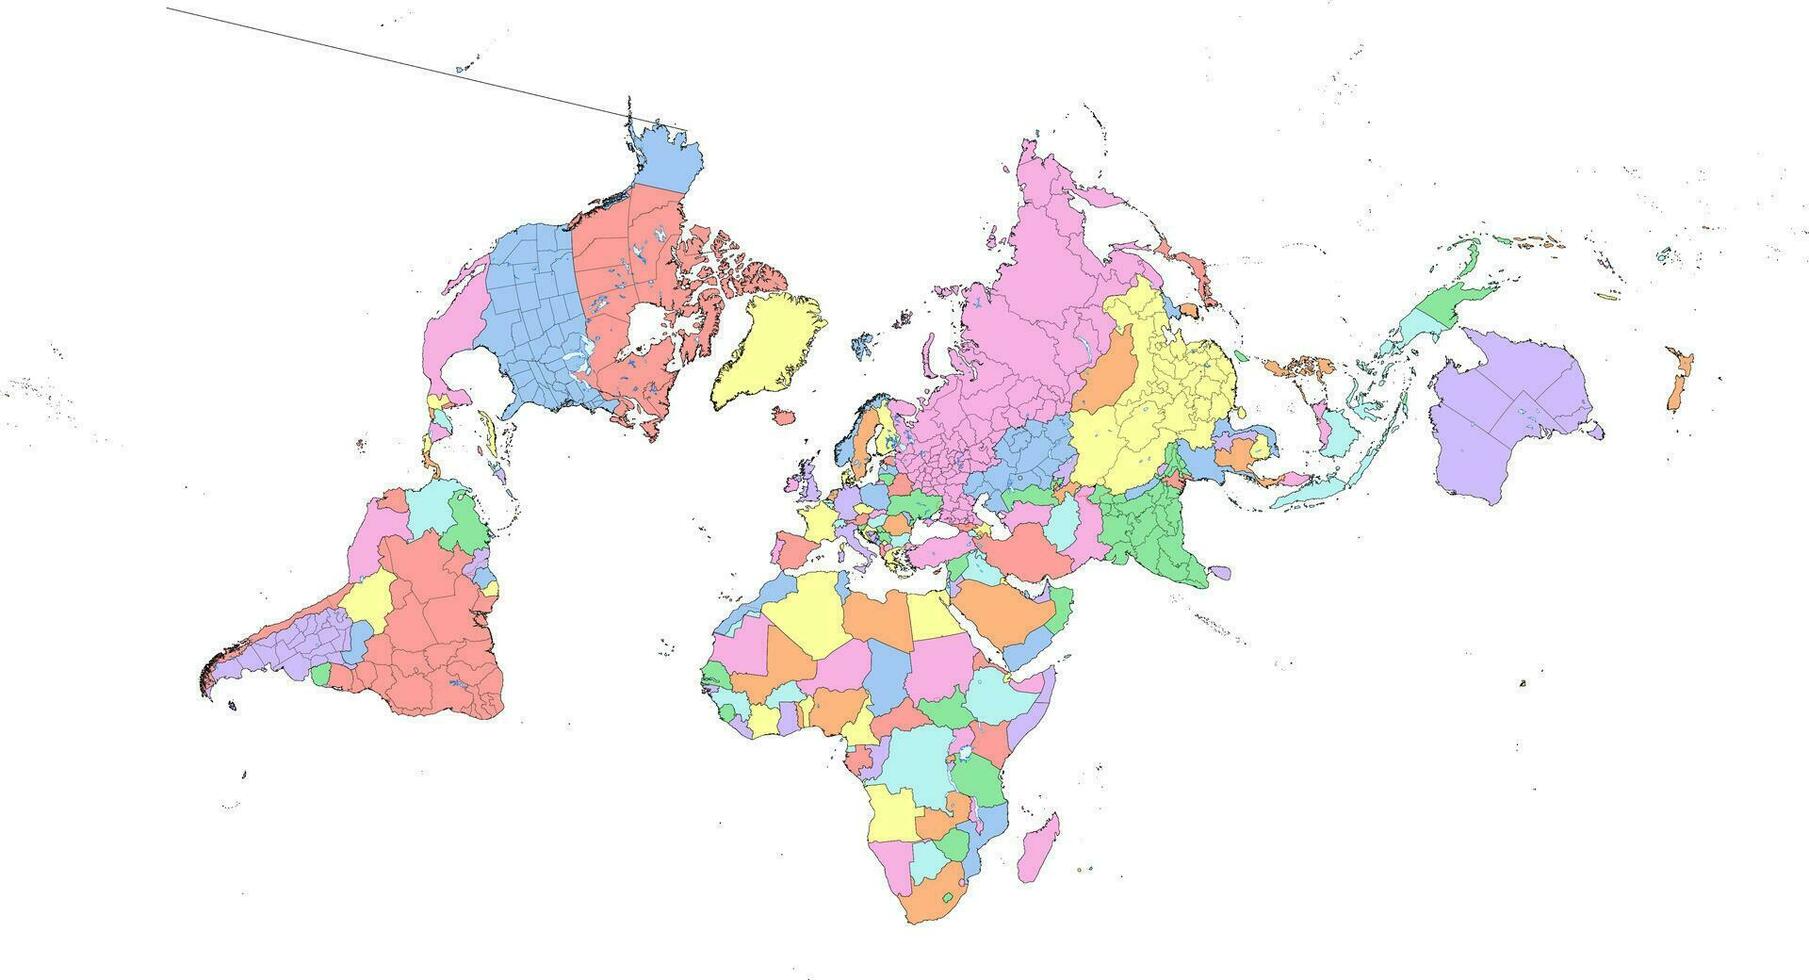 cahill concialdi kaart van de wereld politiek borders vector